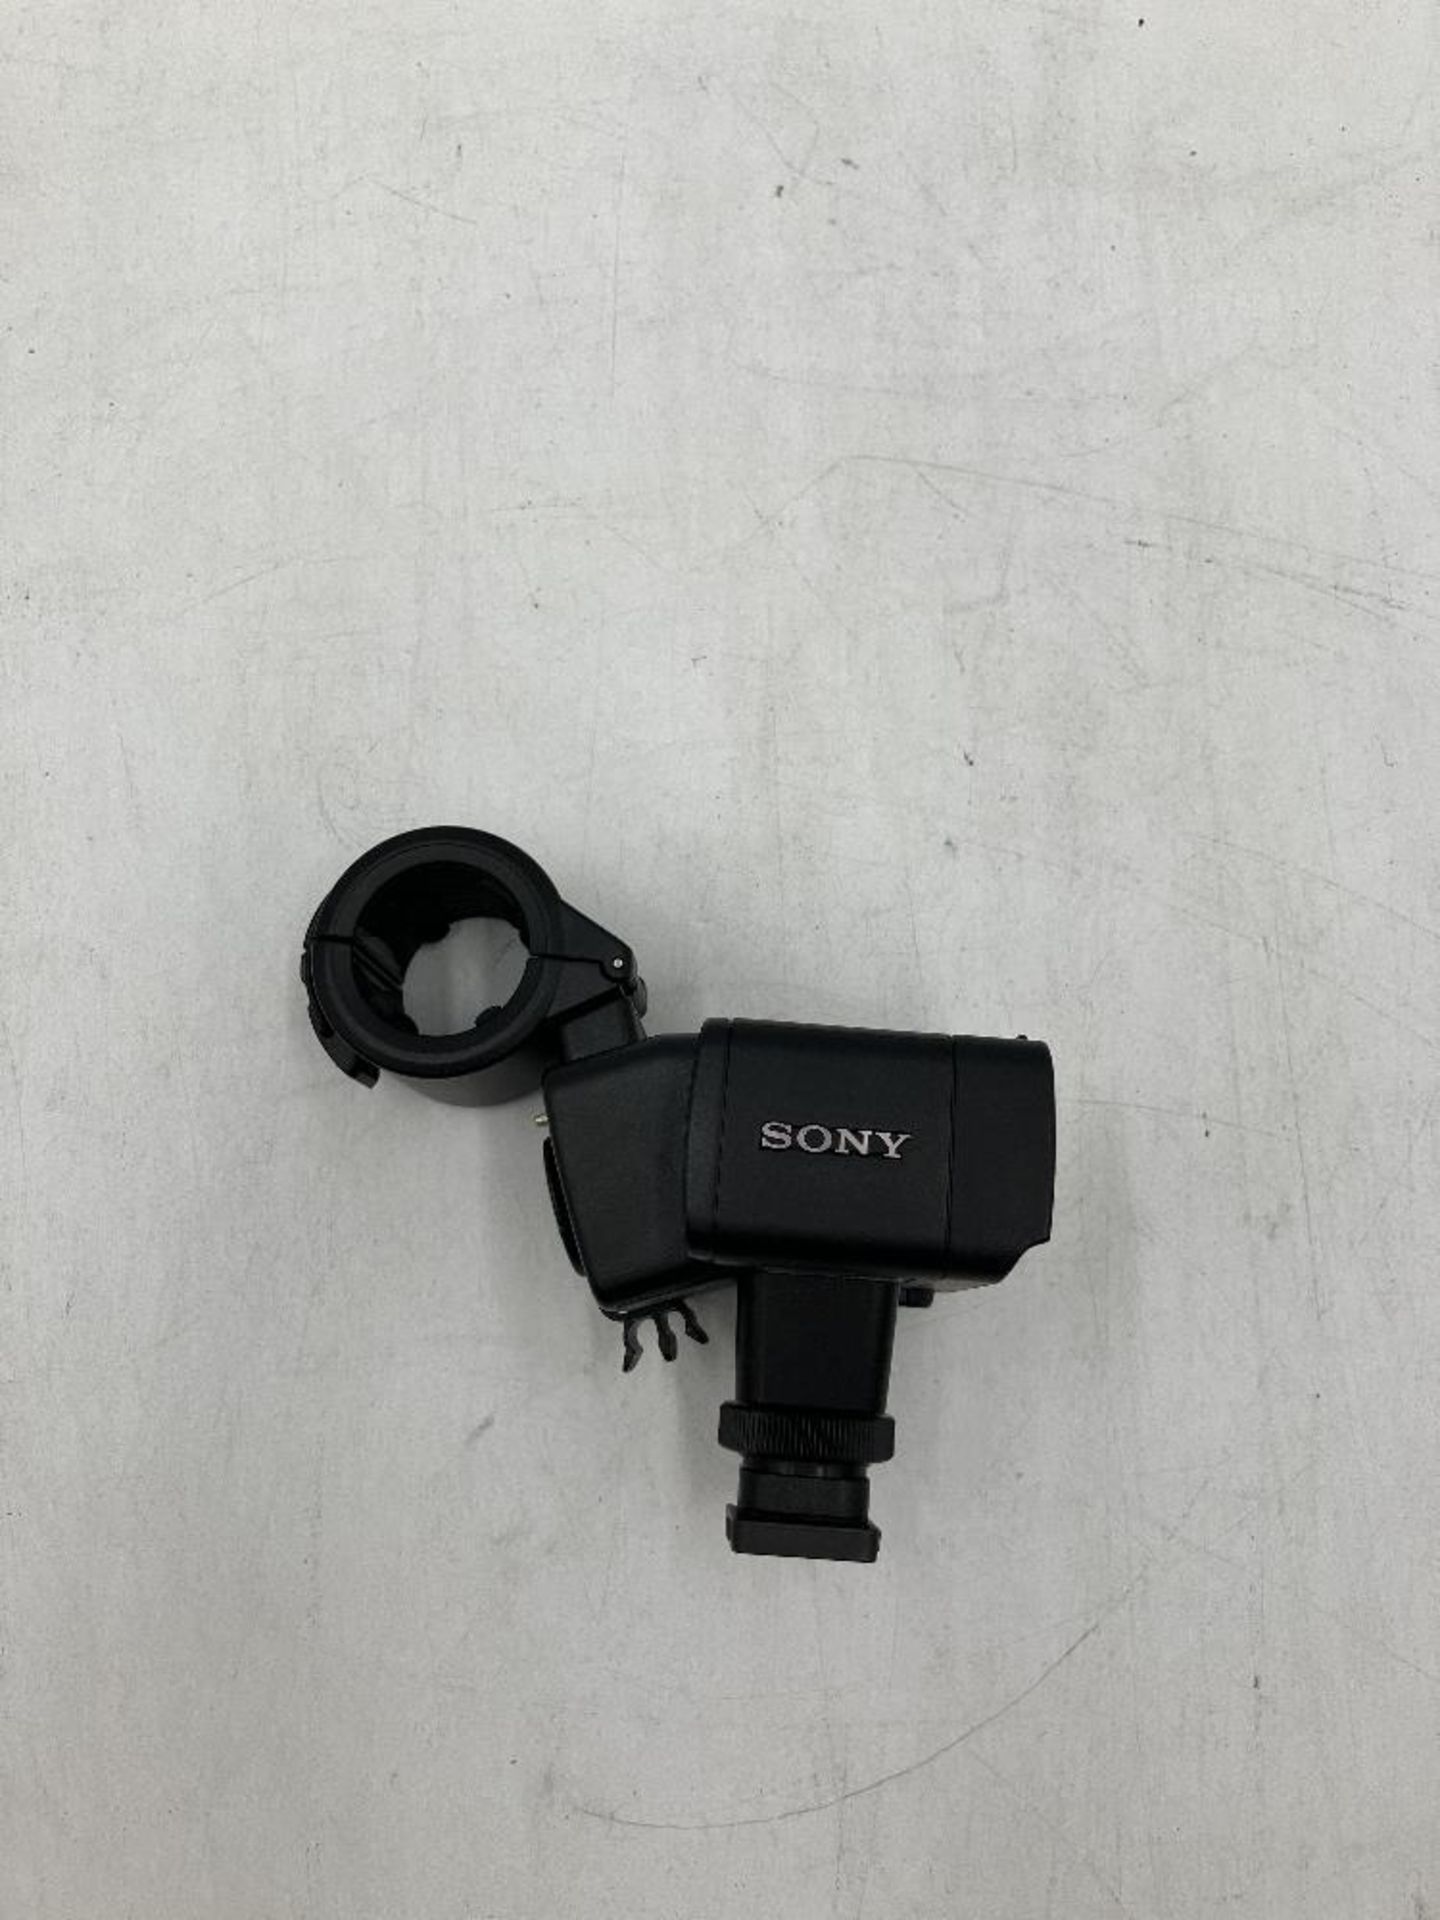 Sony XLR-A2M Audio Adaptor with Sony Microphone - Bild 2 aus 7